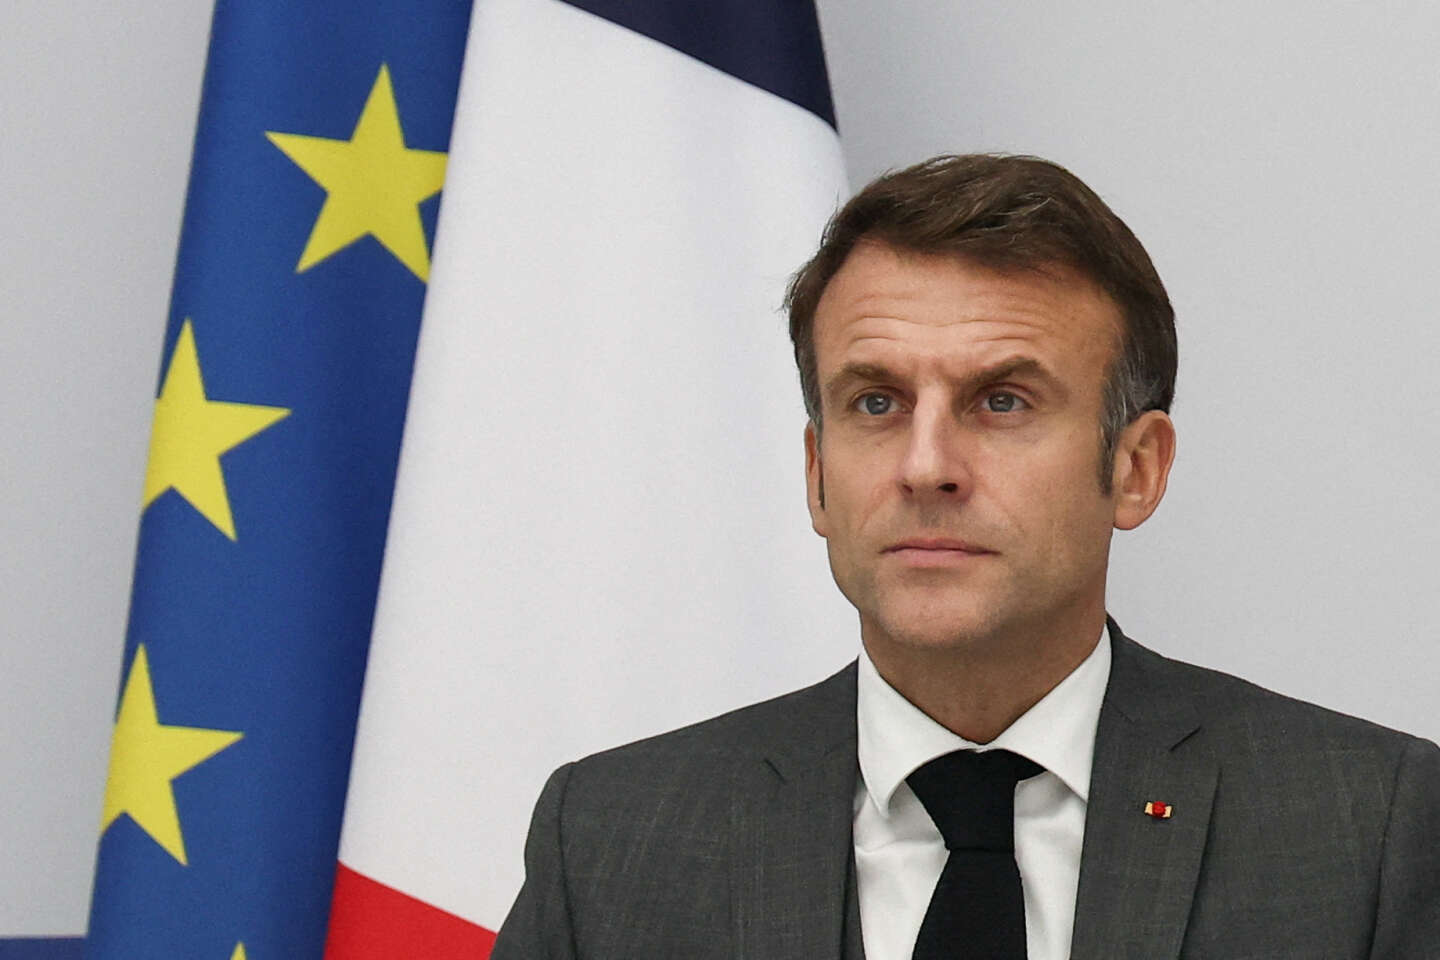 Emmanuel Macron : « Nous devons accélérer en même temps sur le plan de la transition écologique et de la lutte contre la pauvreté »